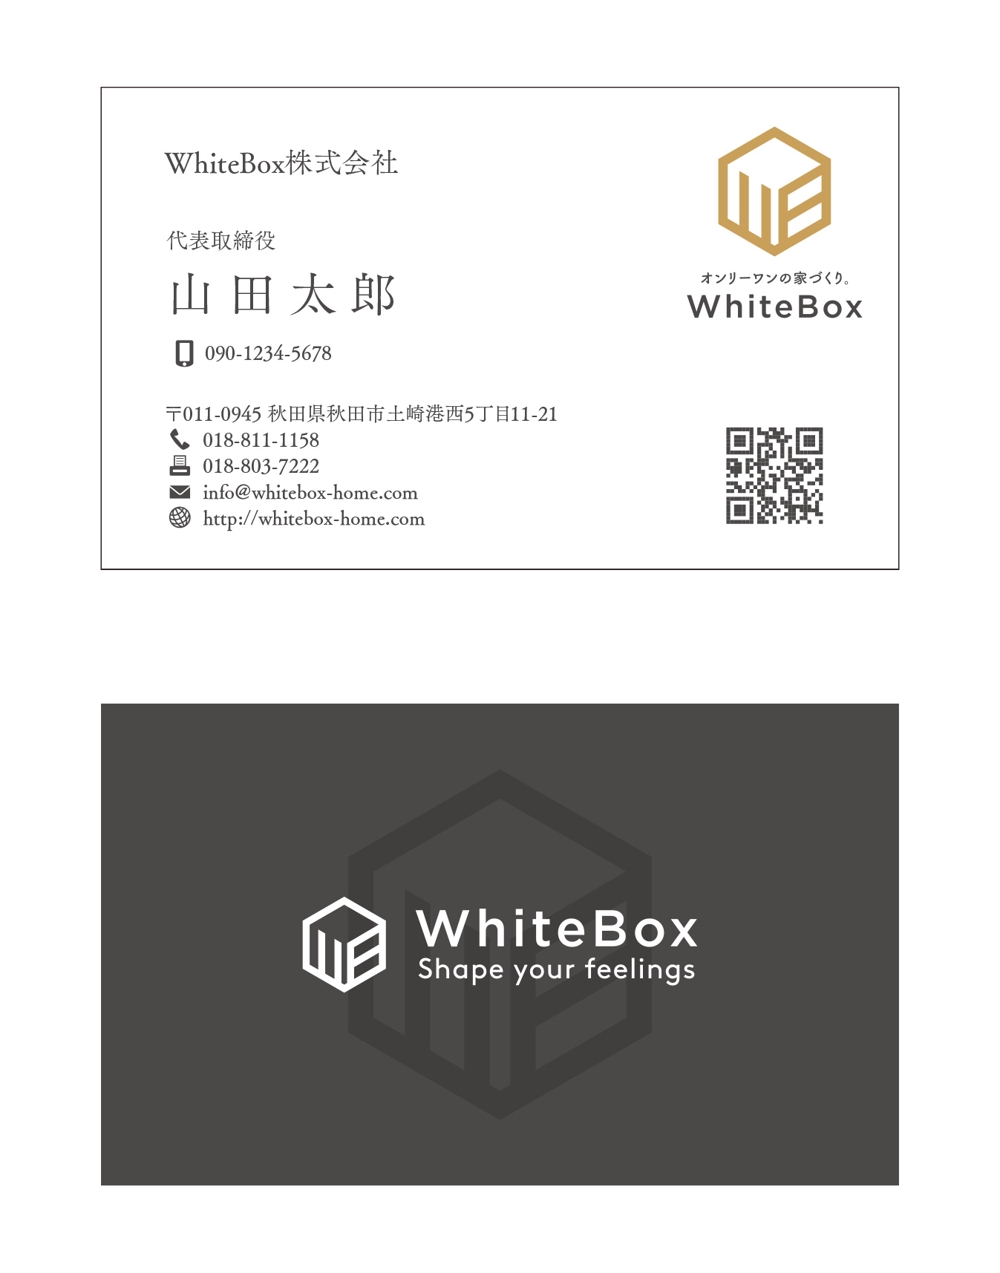 WhiteBox_ver4.jpg